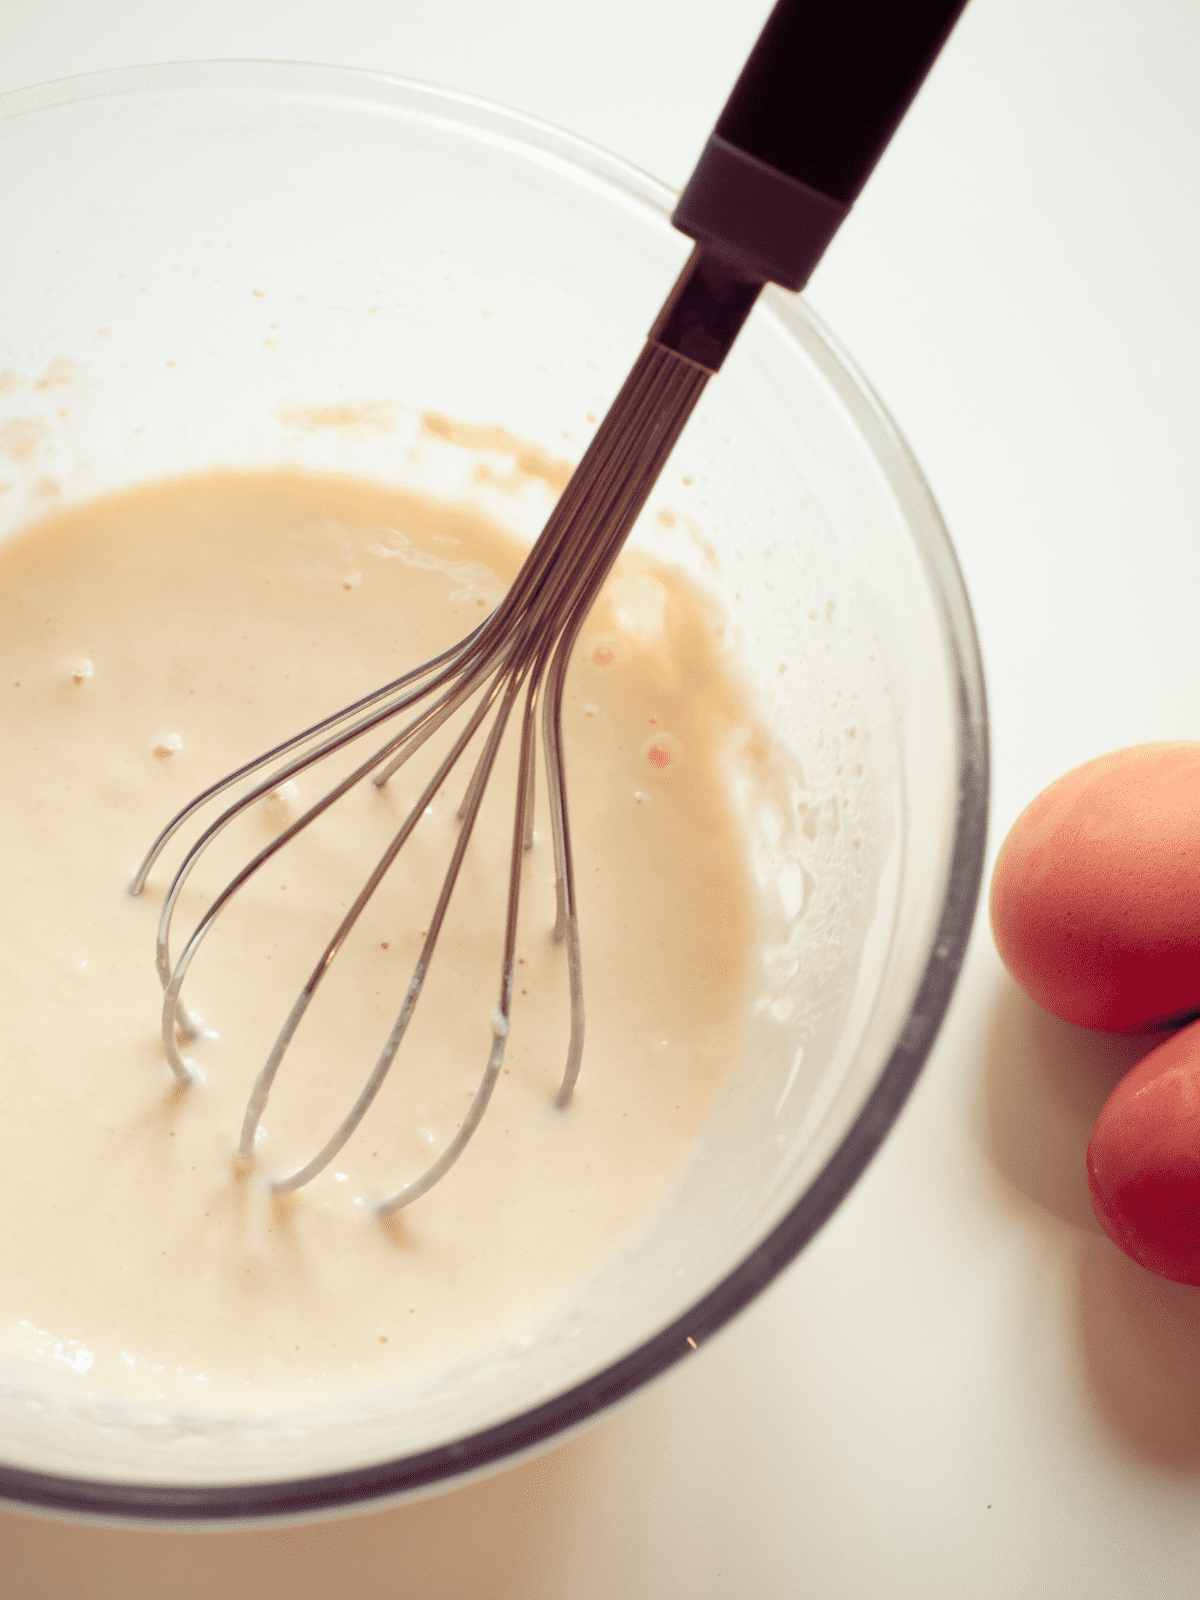 Mixing dairy-free pancake batter in a large mixing bowl.